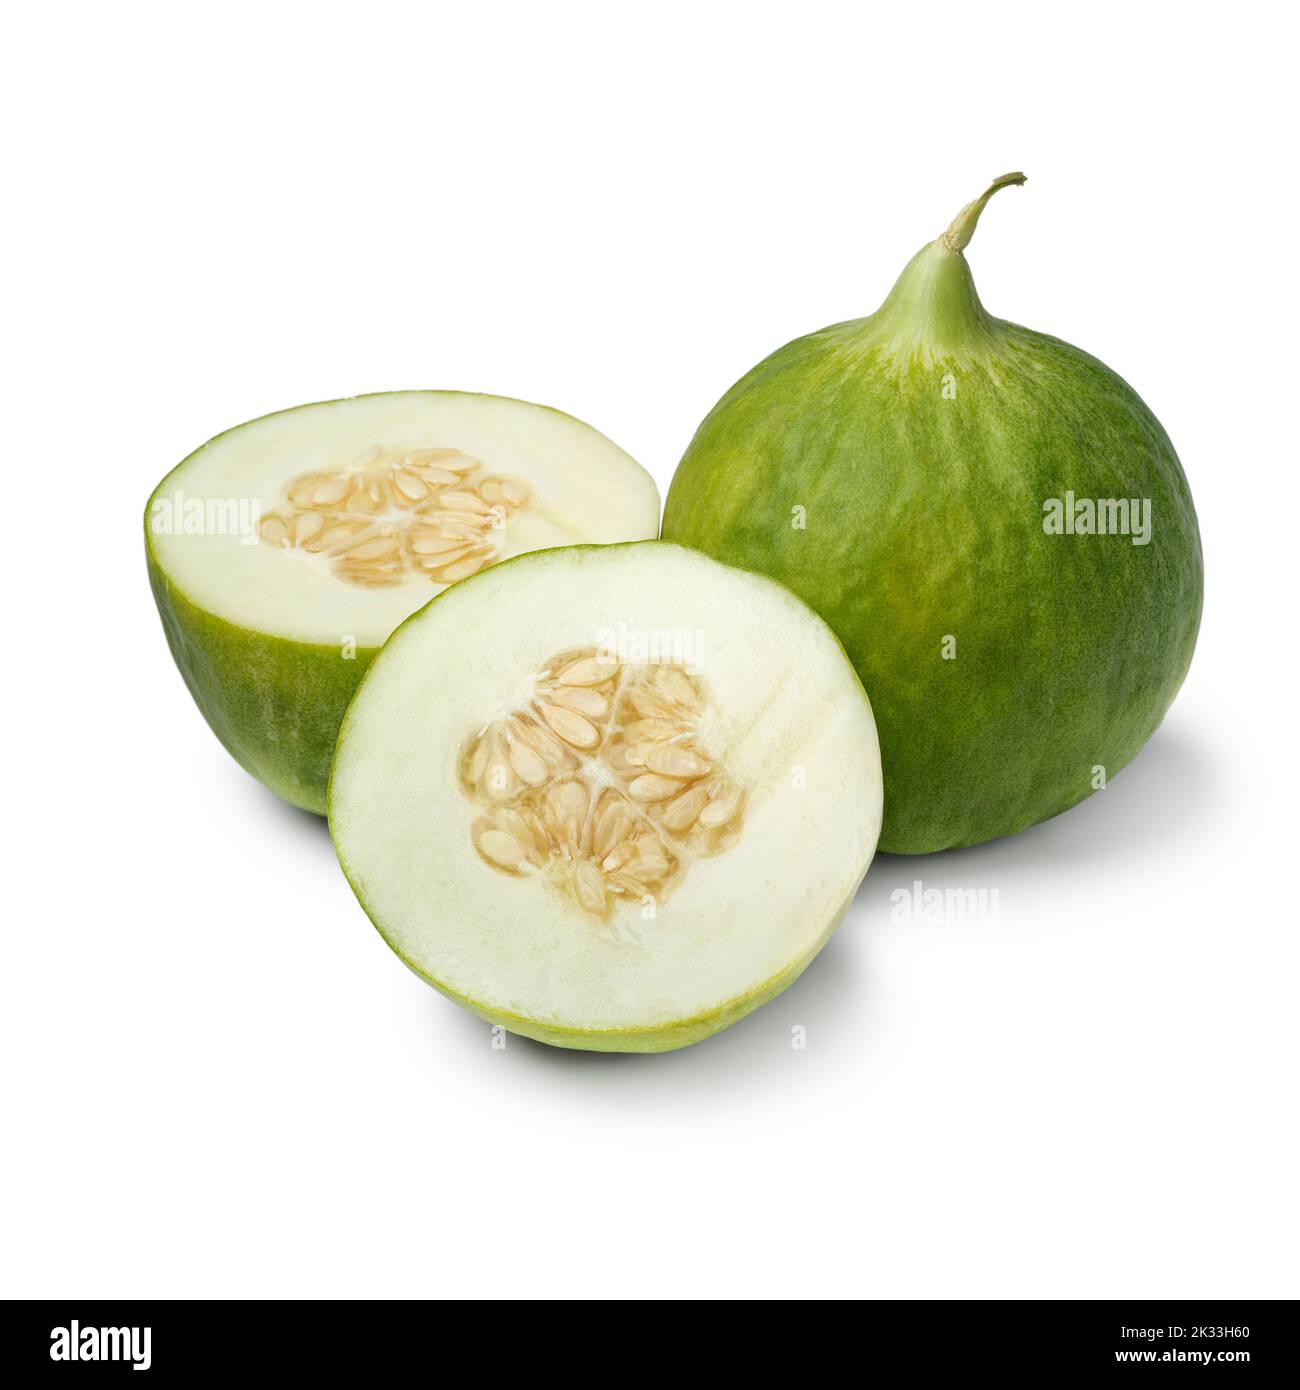 Whole and halved fresh Italian Cumelo fruit, barattiera, isolated on white background close up Stock Photo